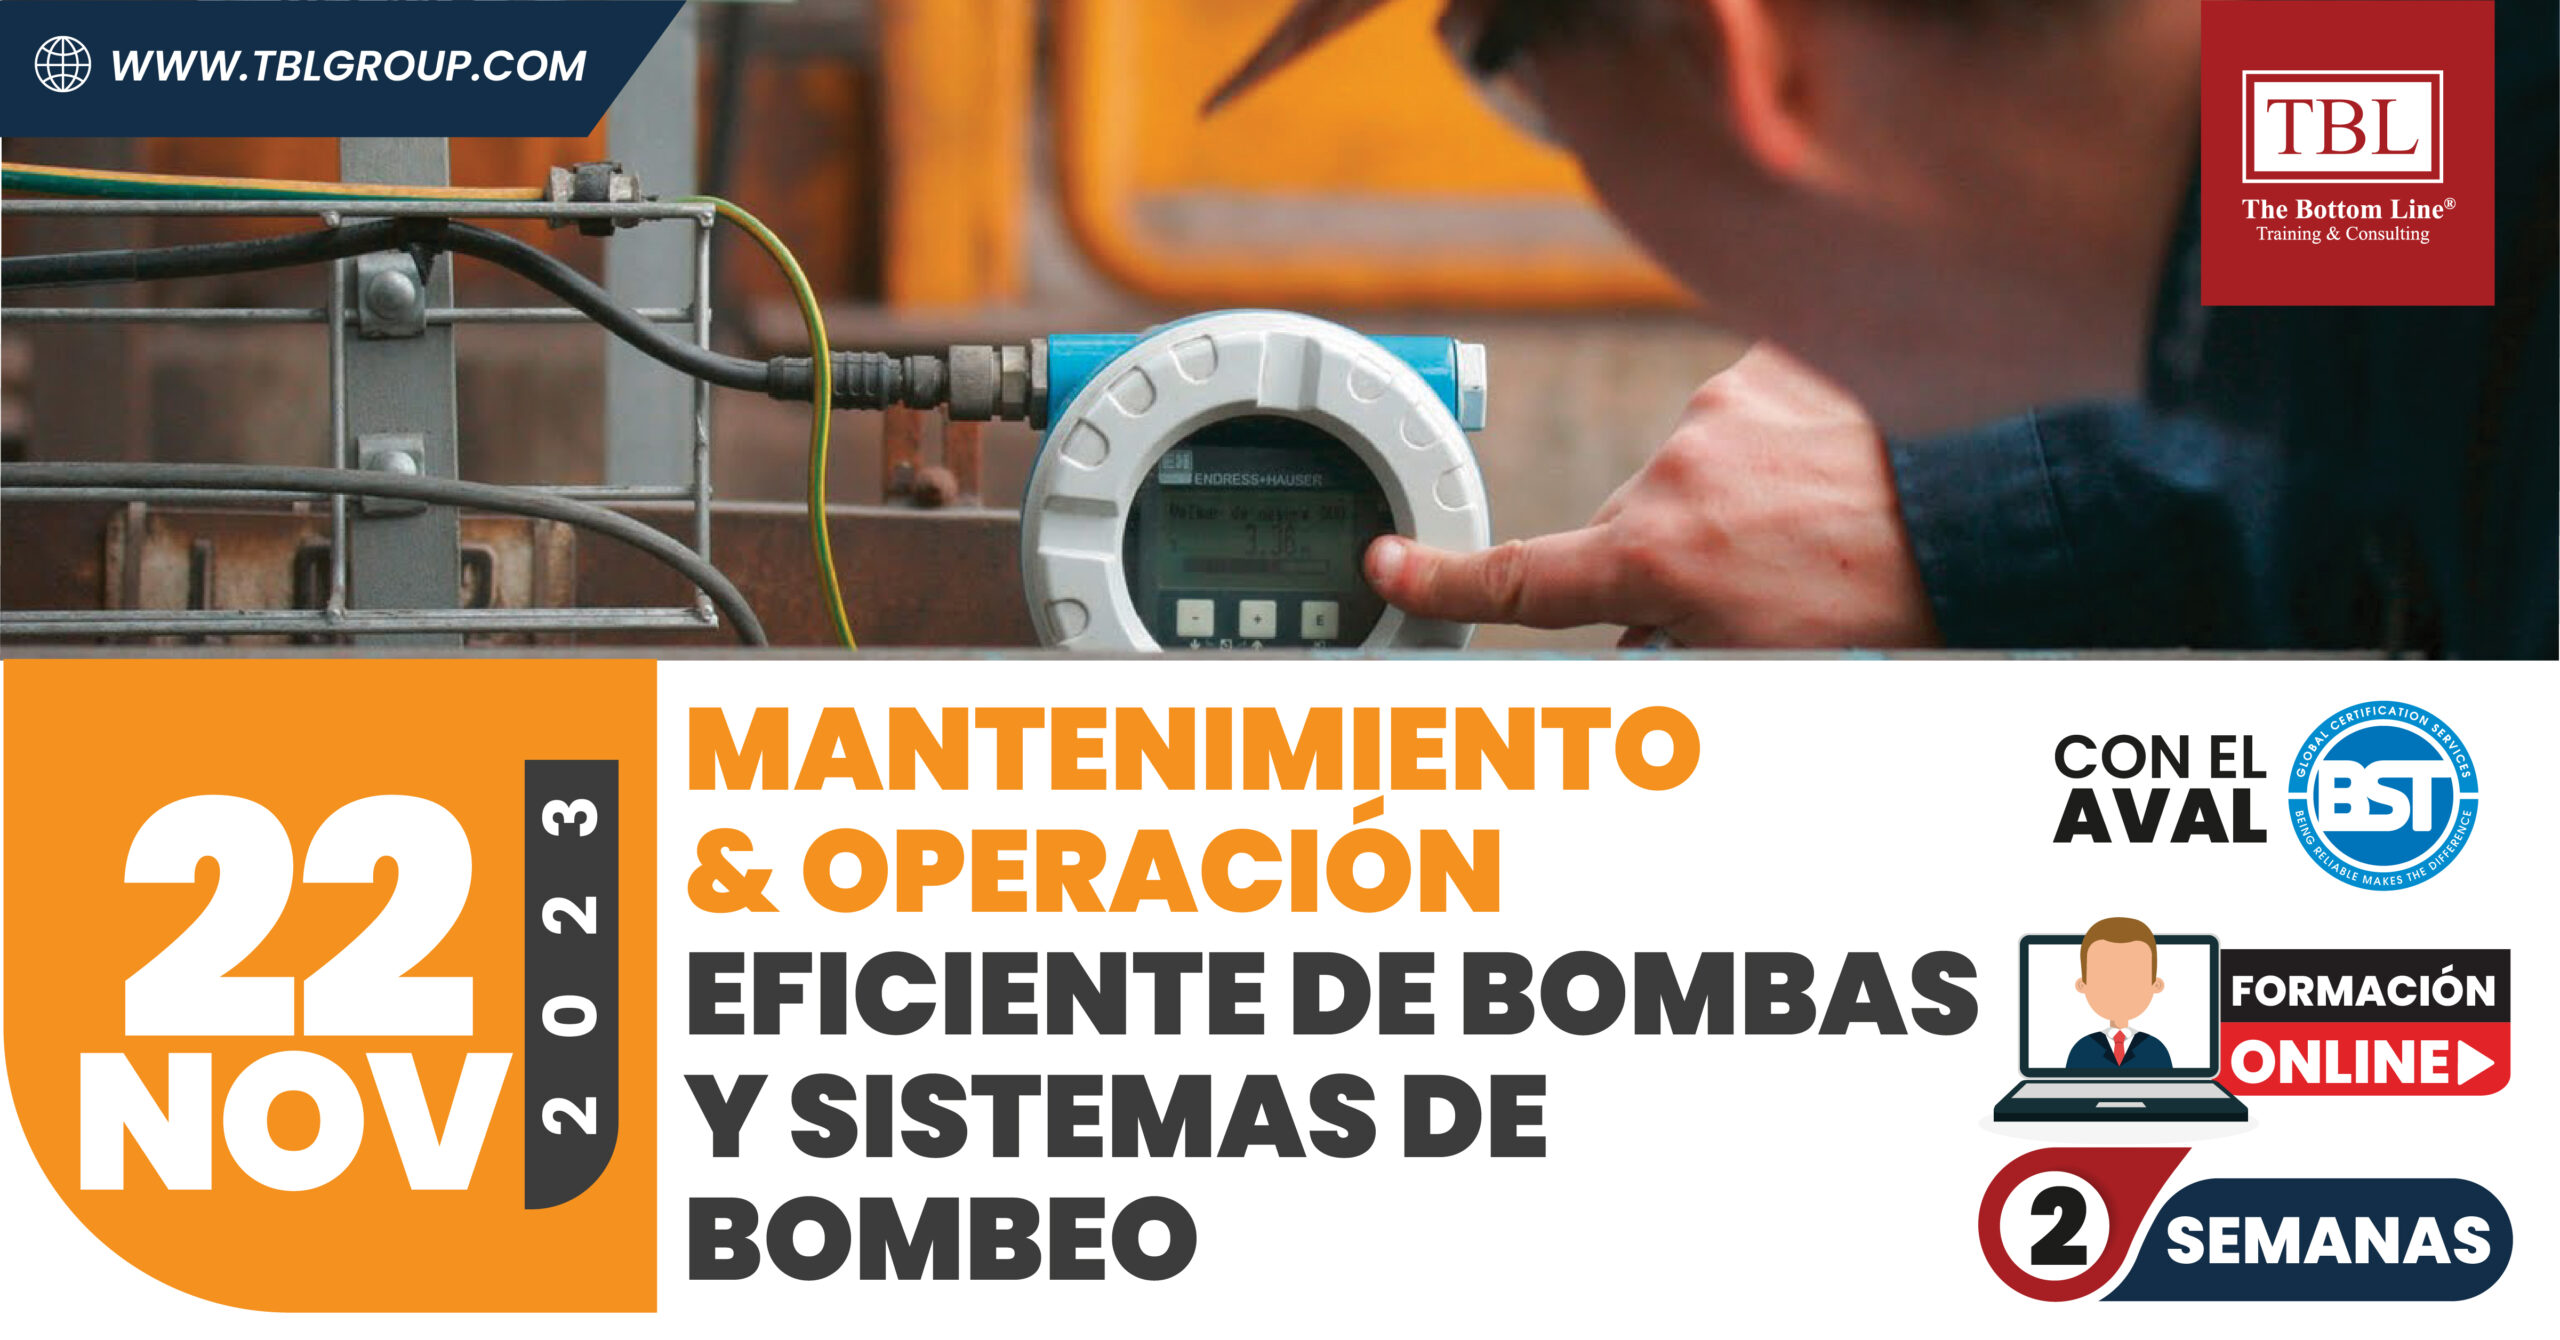 Mantenimiento y Operación Eficiente de Bombas y Sistemas de Bombeo